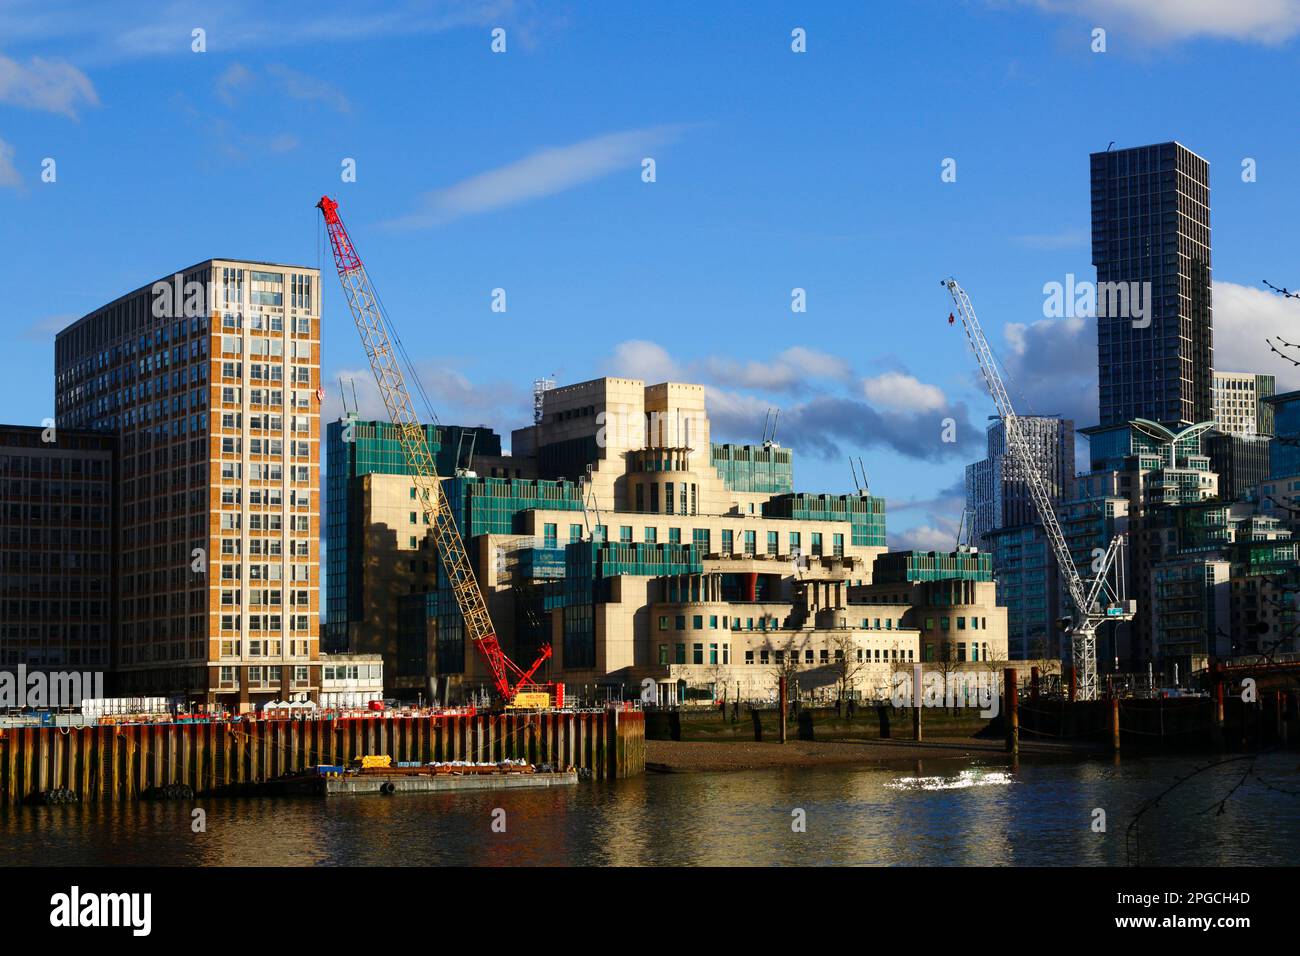 Vue sur la Tamise de Millbank à MI6 bâtiments et grues sur les sites de construction à proximité, Londres, Angleterre Banque D'Images